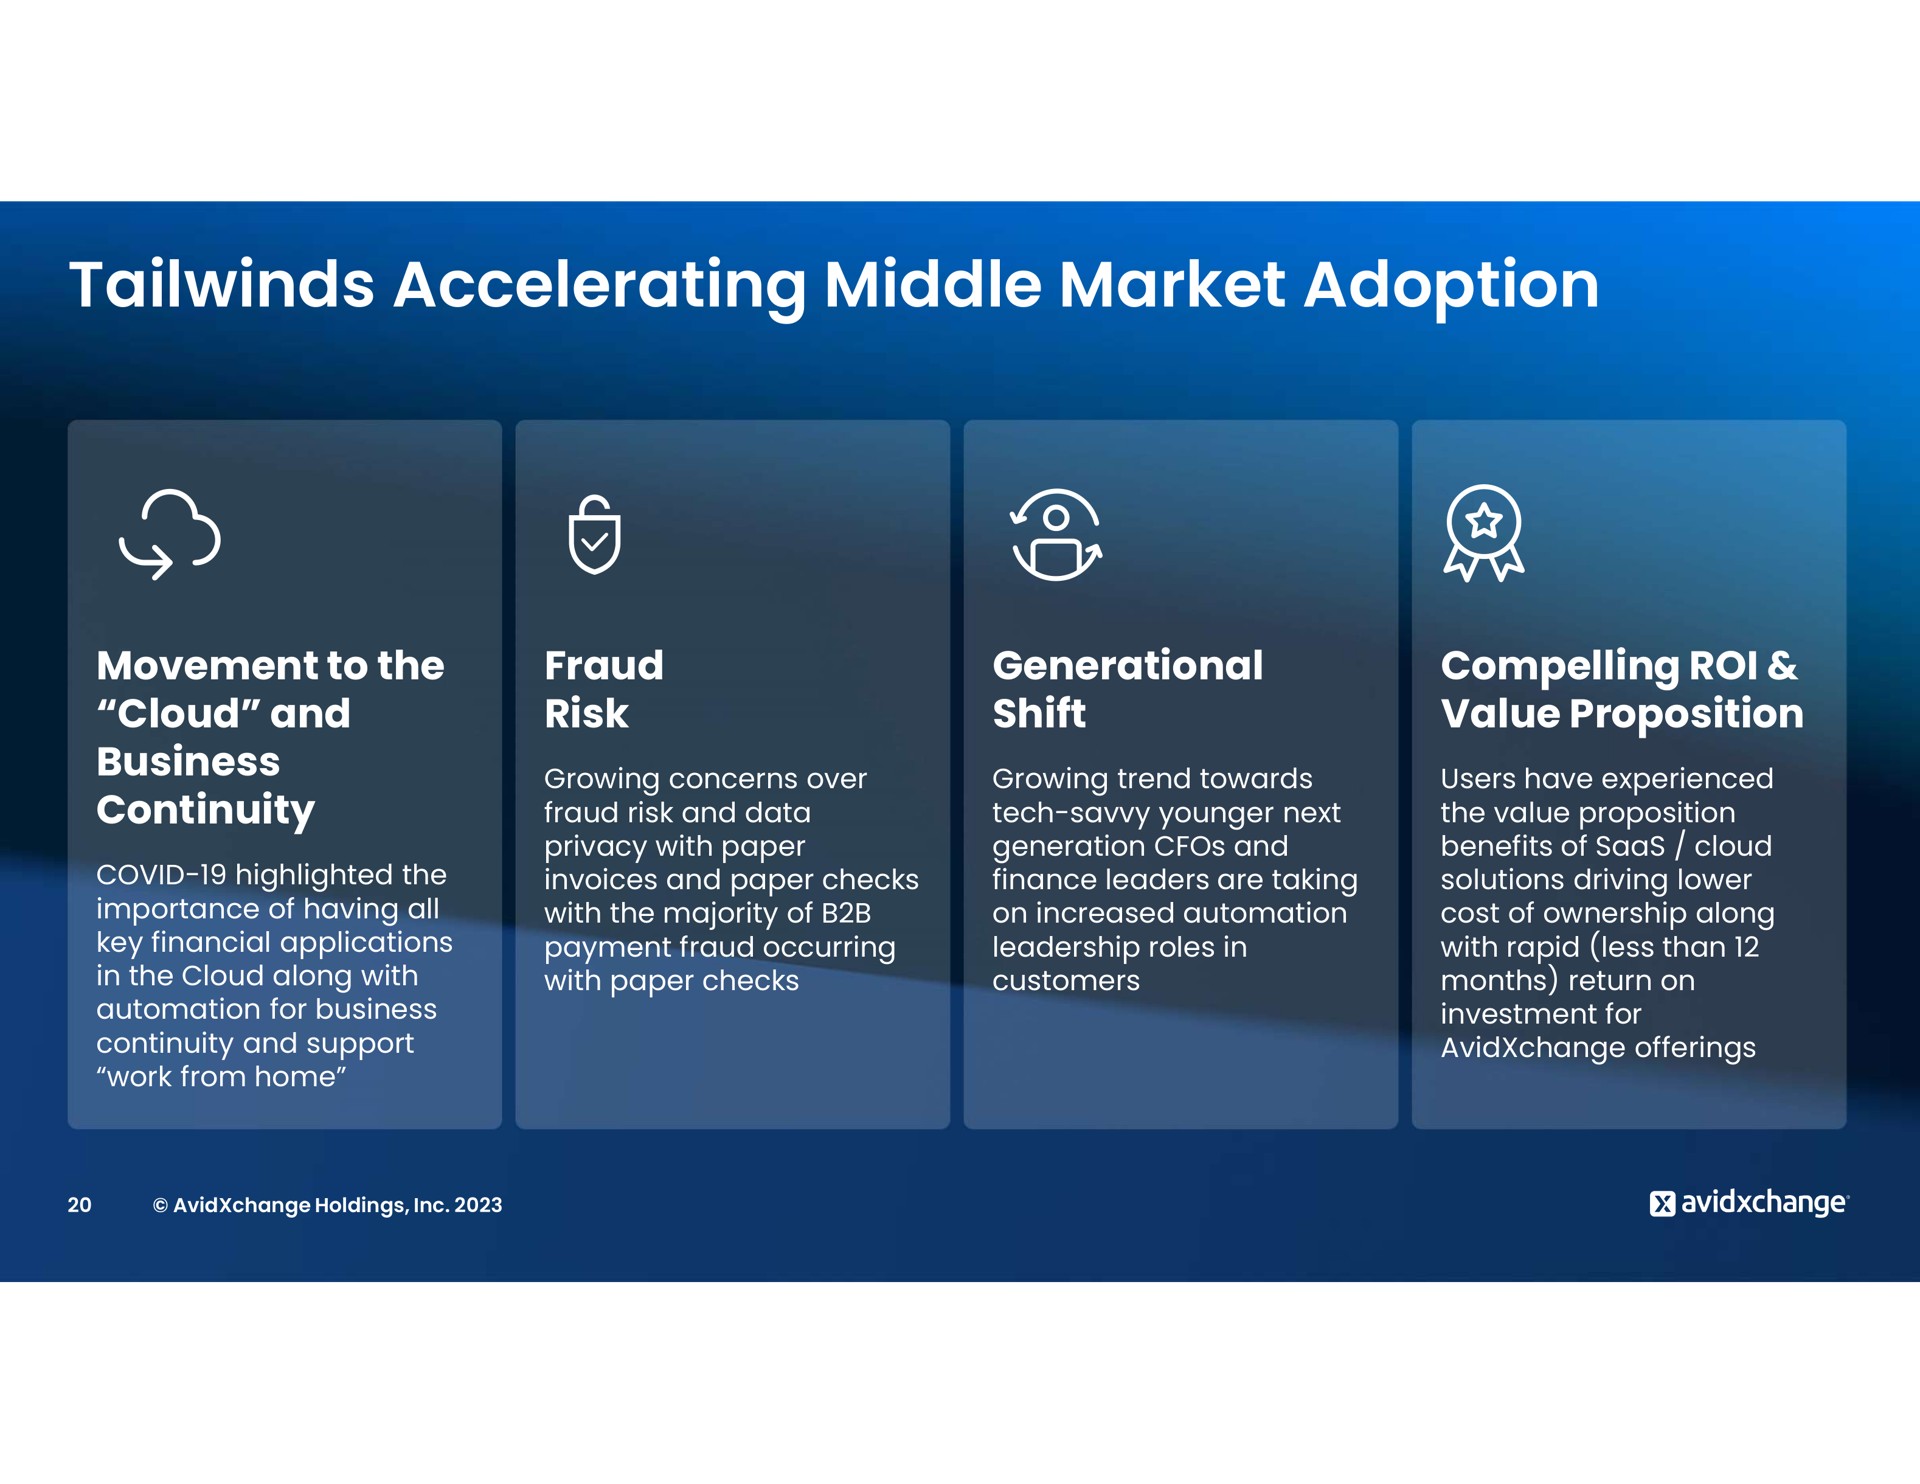 accelerating middle market adoption soy | AvidXchange